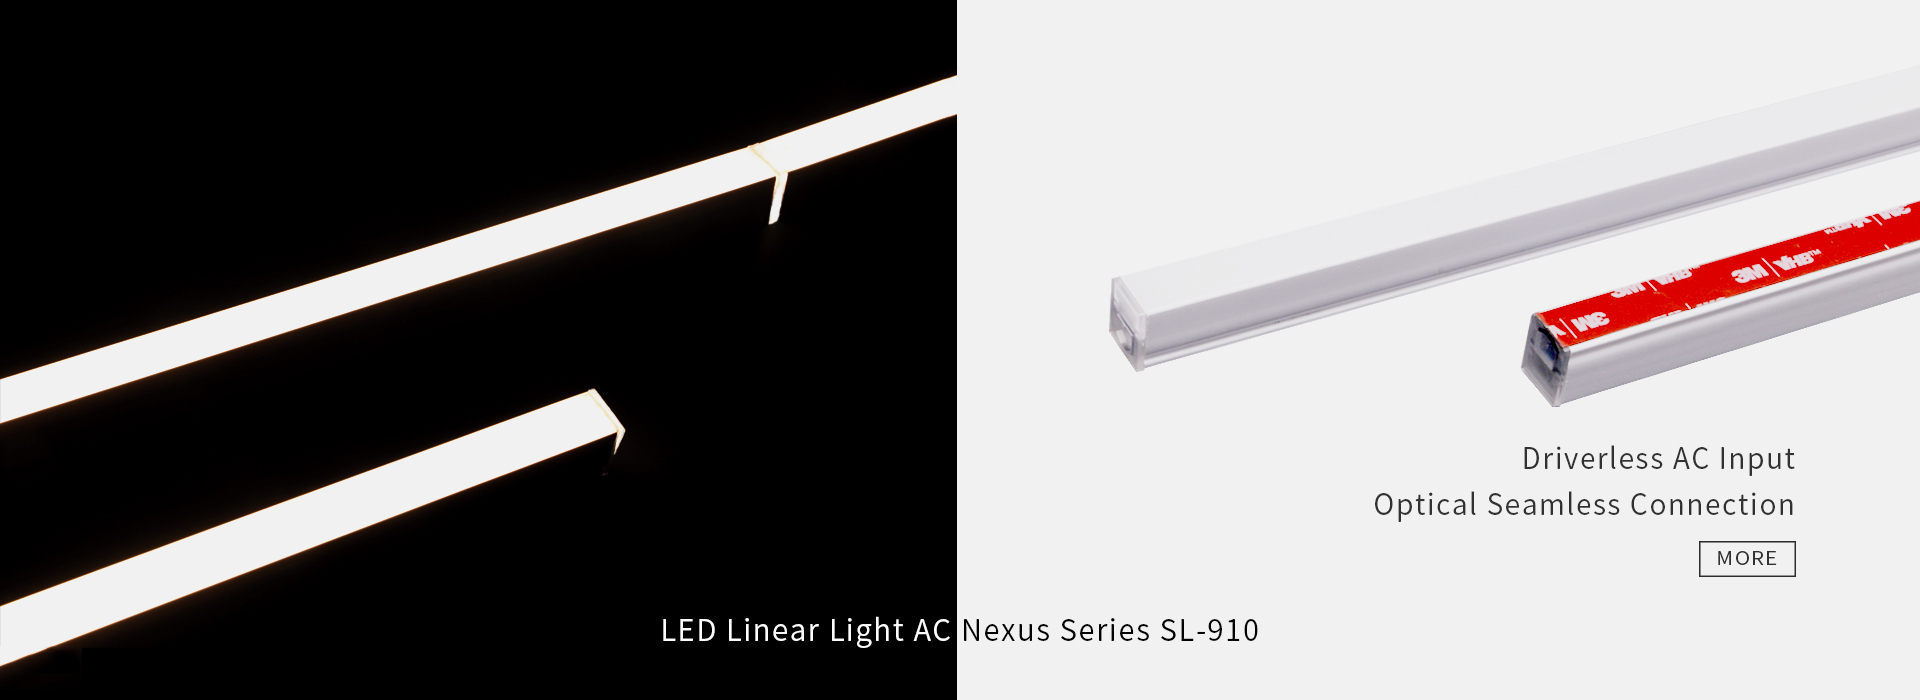 شريط نيون LED علوي منحنى NS-109 وسلسلة حلزونية جانبية NS-205